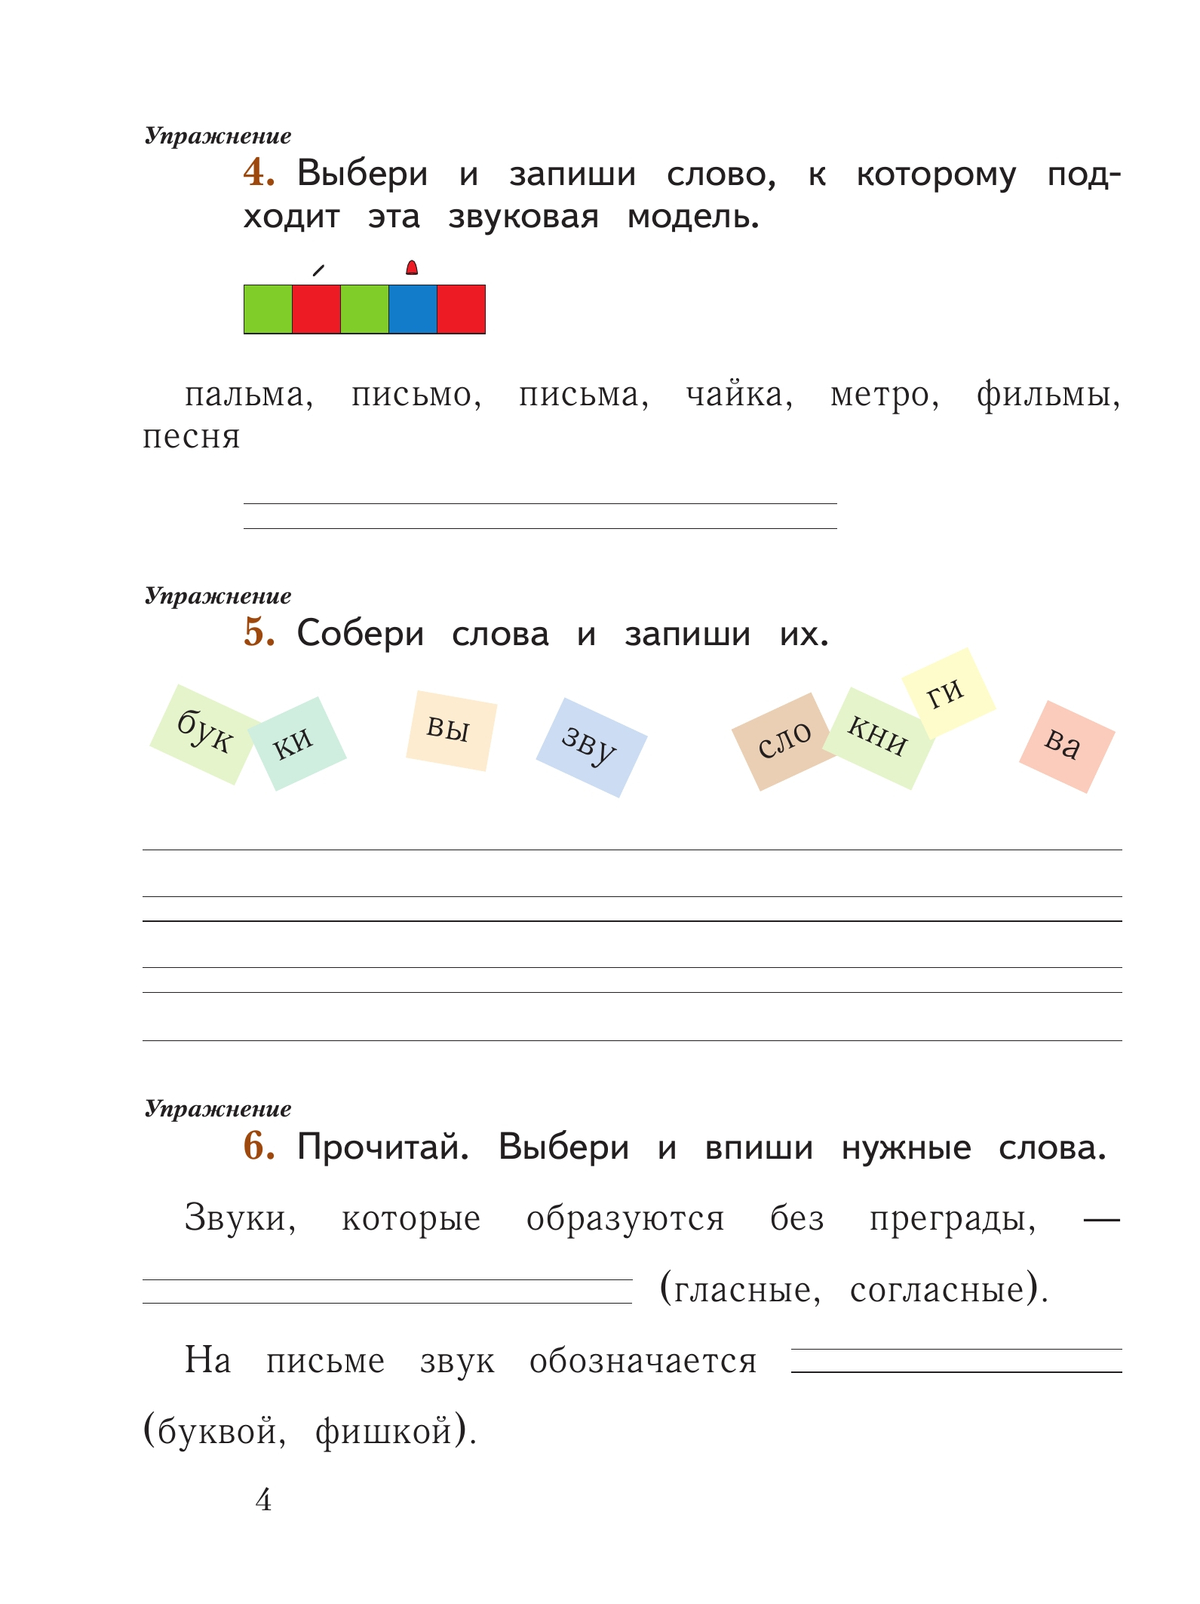 Русский язык. 1 класс. Рабочая тетрадь. В 2 частях. Часть 1 2